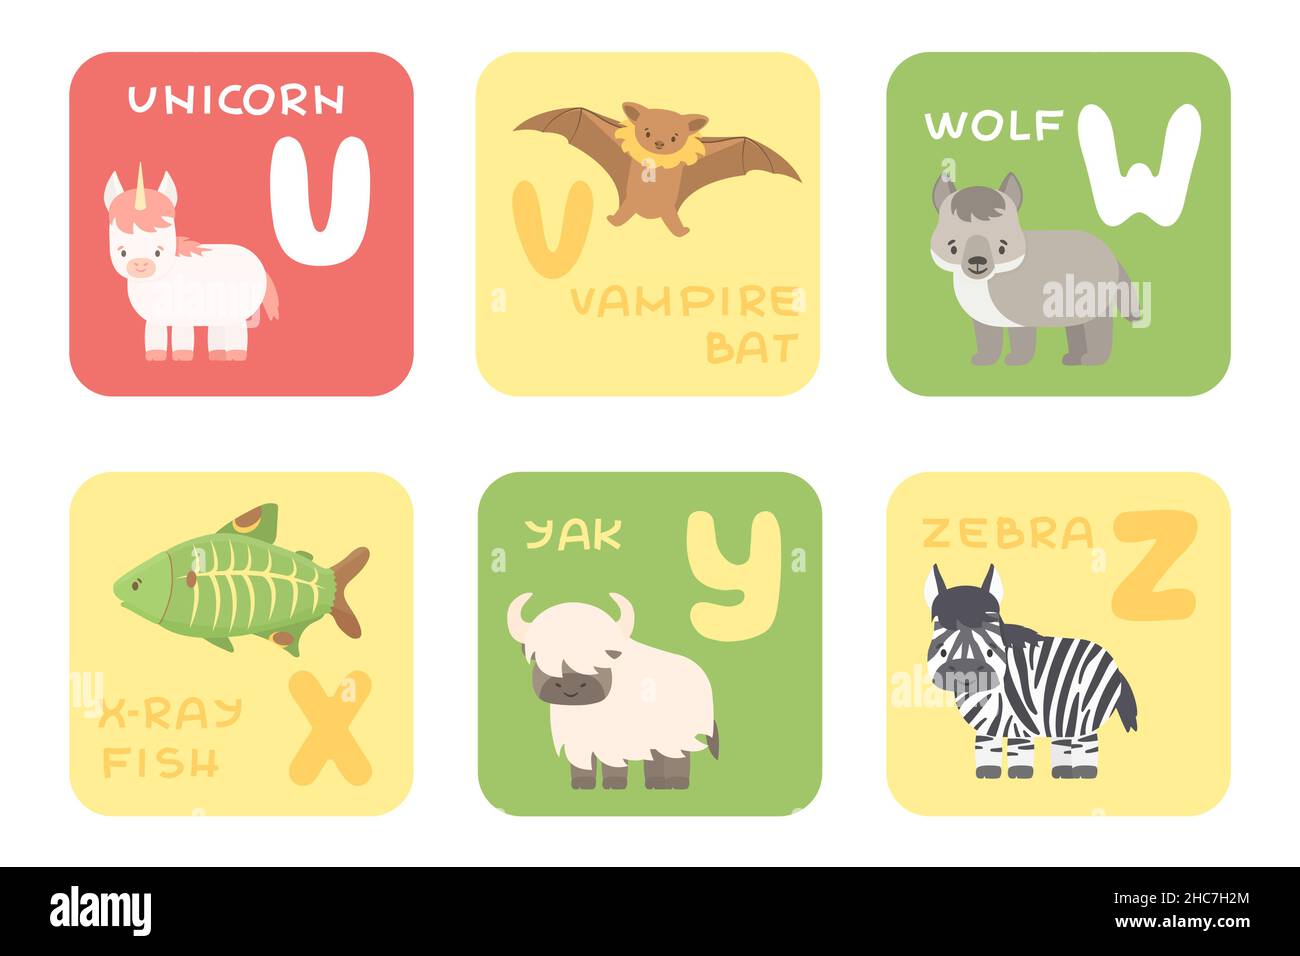 Niedliche Vektor U-Z Zoo flach Alphabet isolierte Bildungskarten mit Cartoon-Tiere. Einhorn, Vampirfledermaus, Wolf, Röntgenfisch, Yak, zebratiere, flacher Stil Stock Vektor